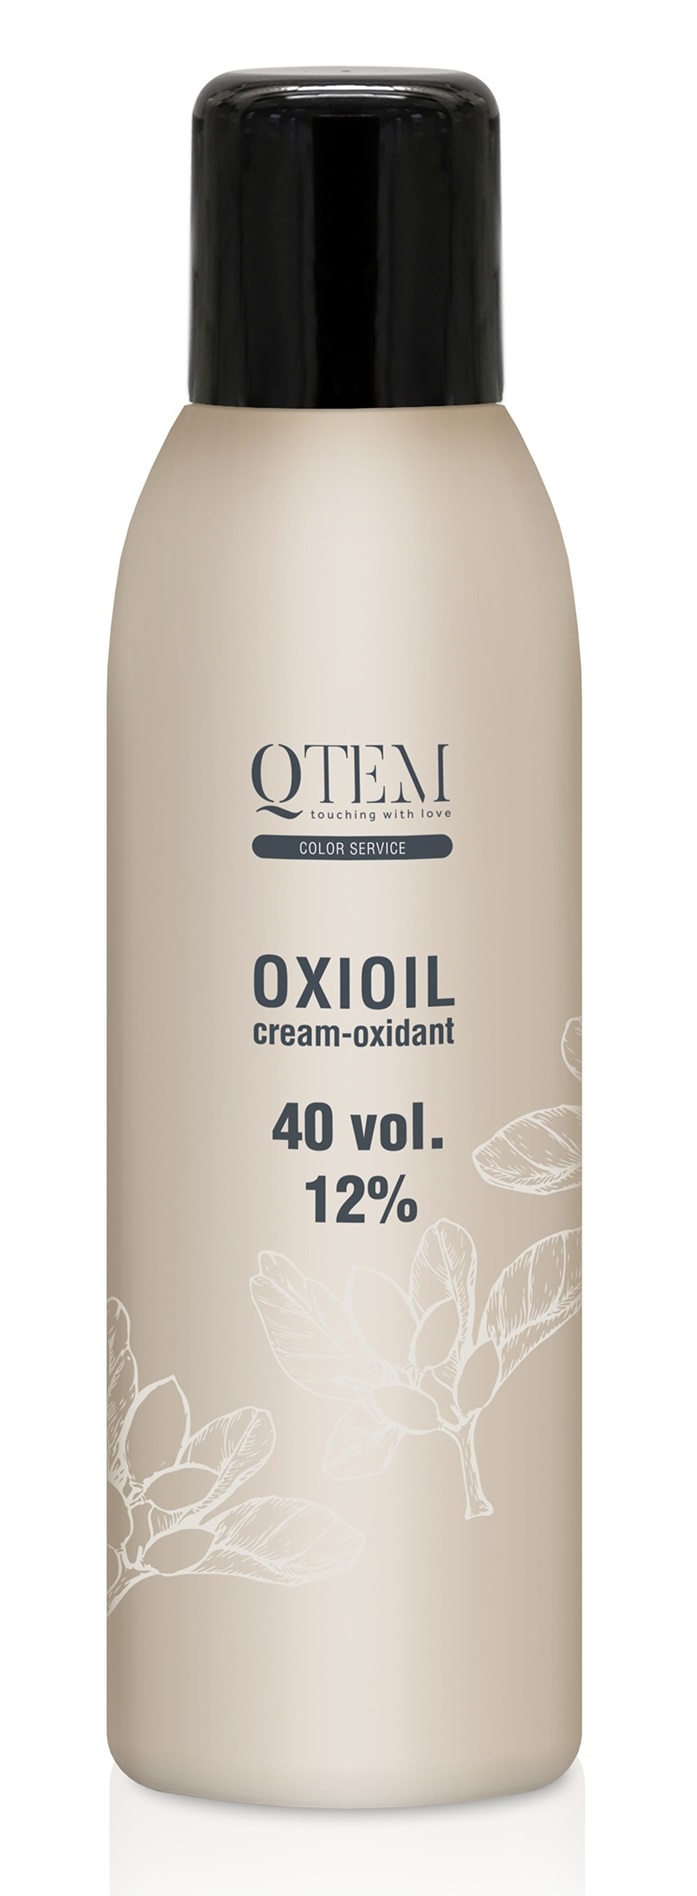 Купить Крем-оксидант QTEM 12% (OXIOIL CREAM-OXIDANT 40 Vol) 1000 мл